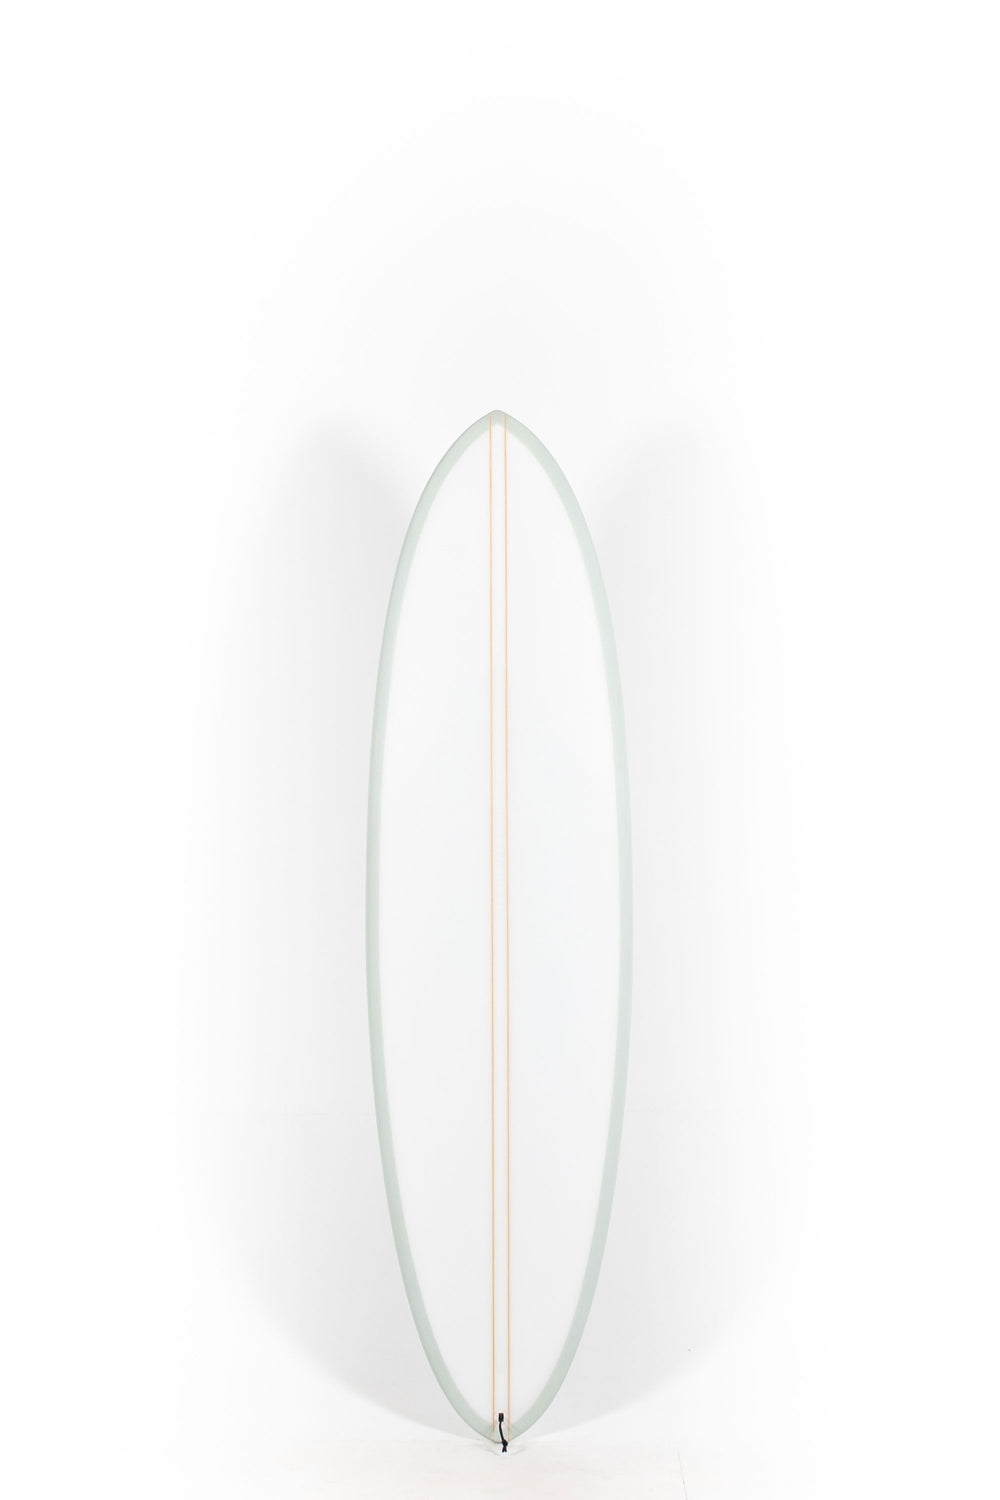 Pukas surf Shop - HaydenShapes Surfboard - MID LENGTH GLIDER - BLU TILE - 6'7